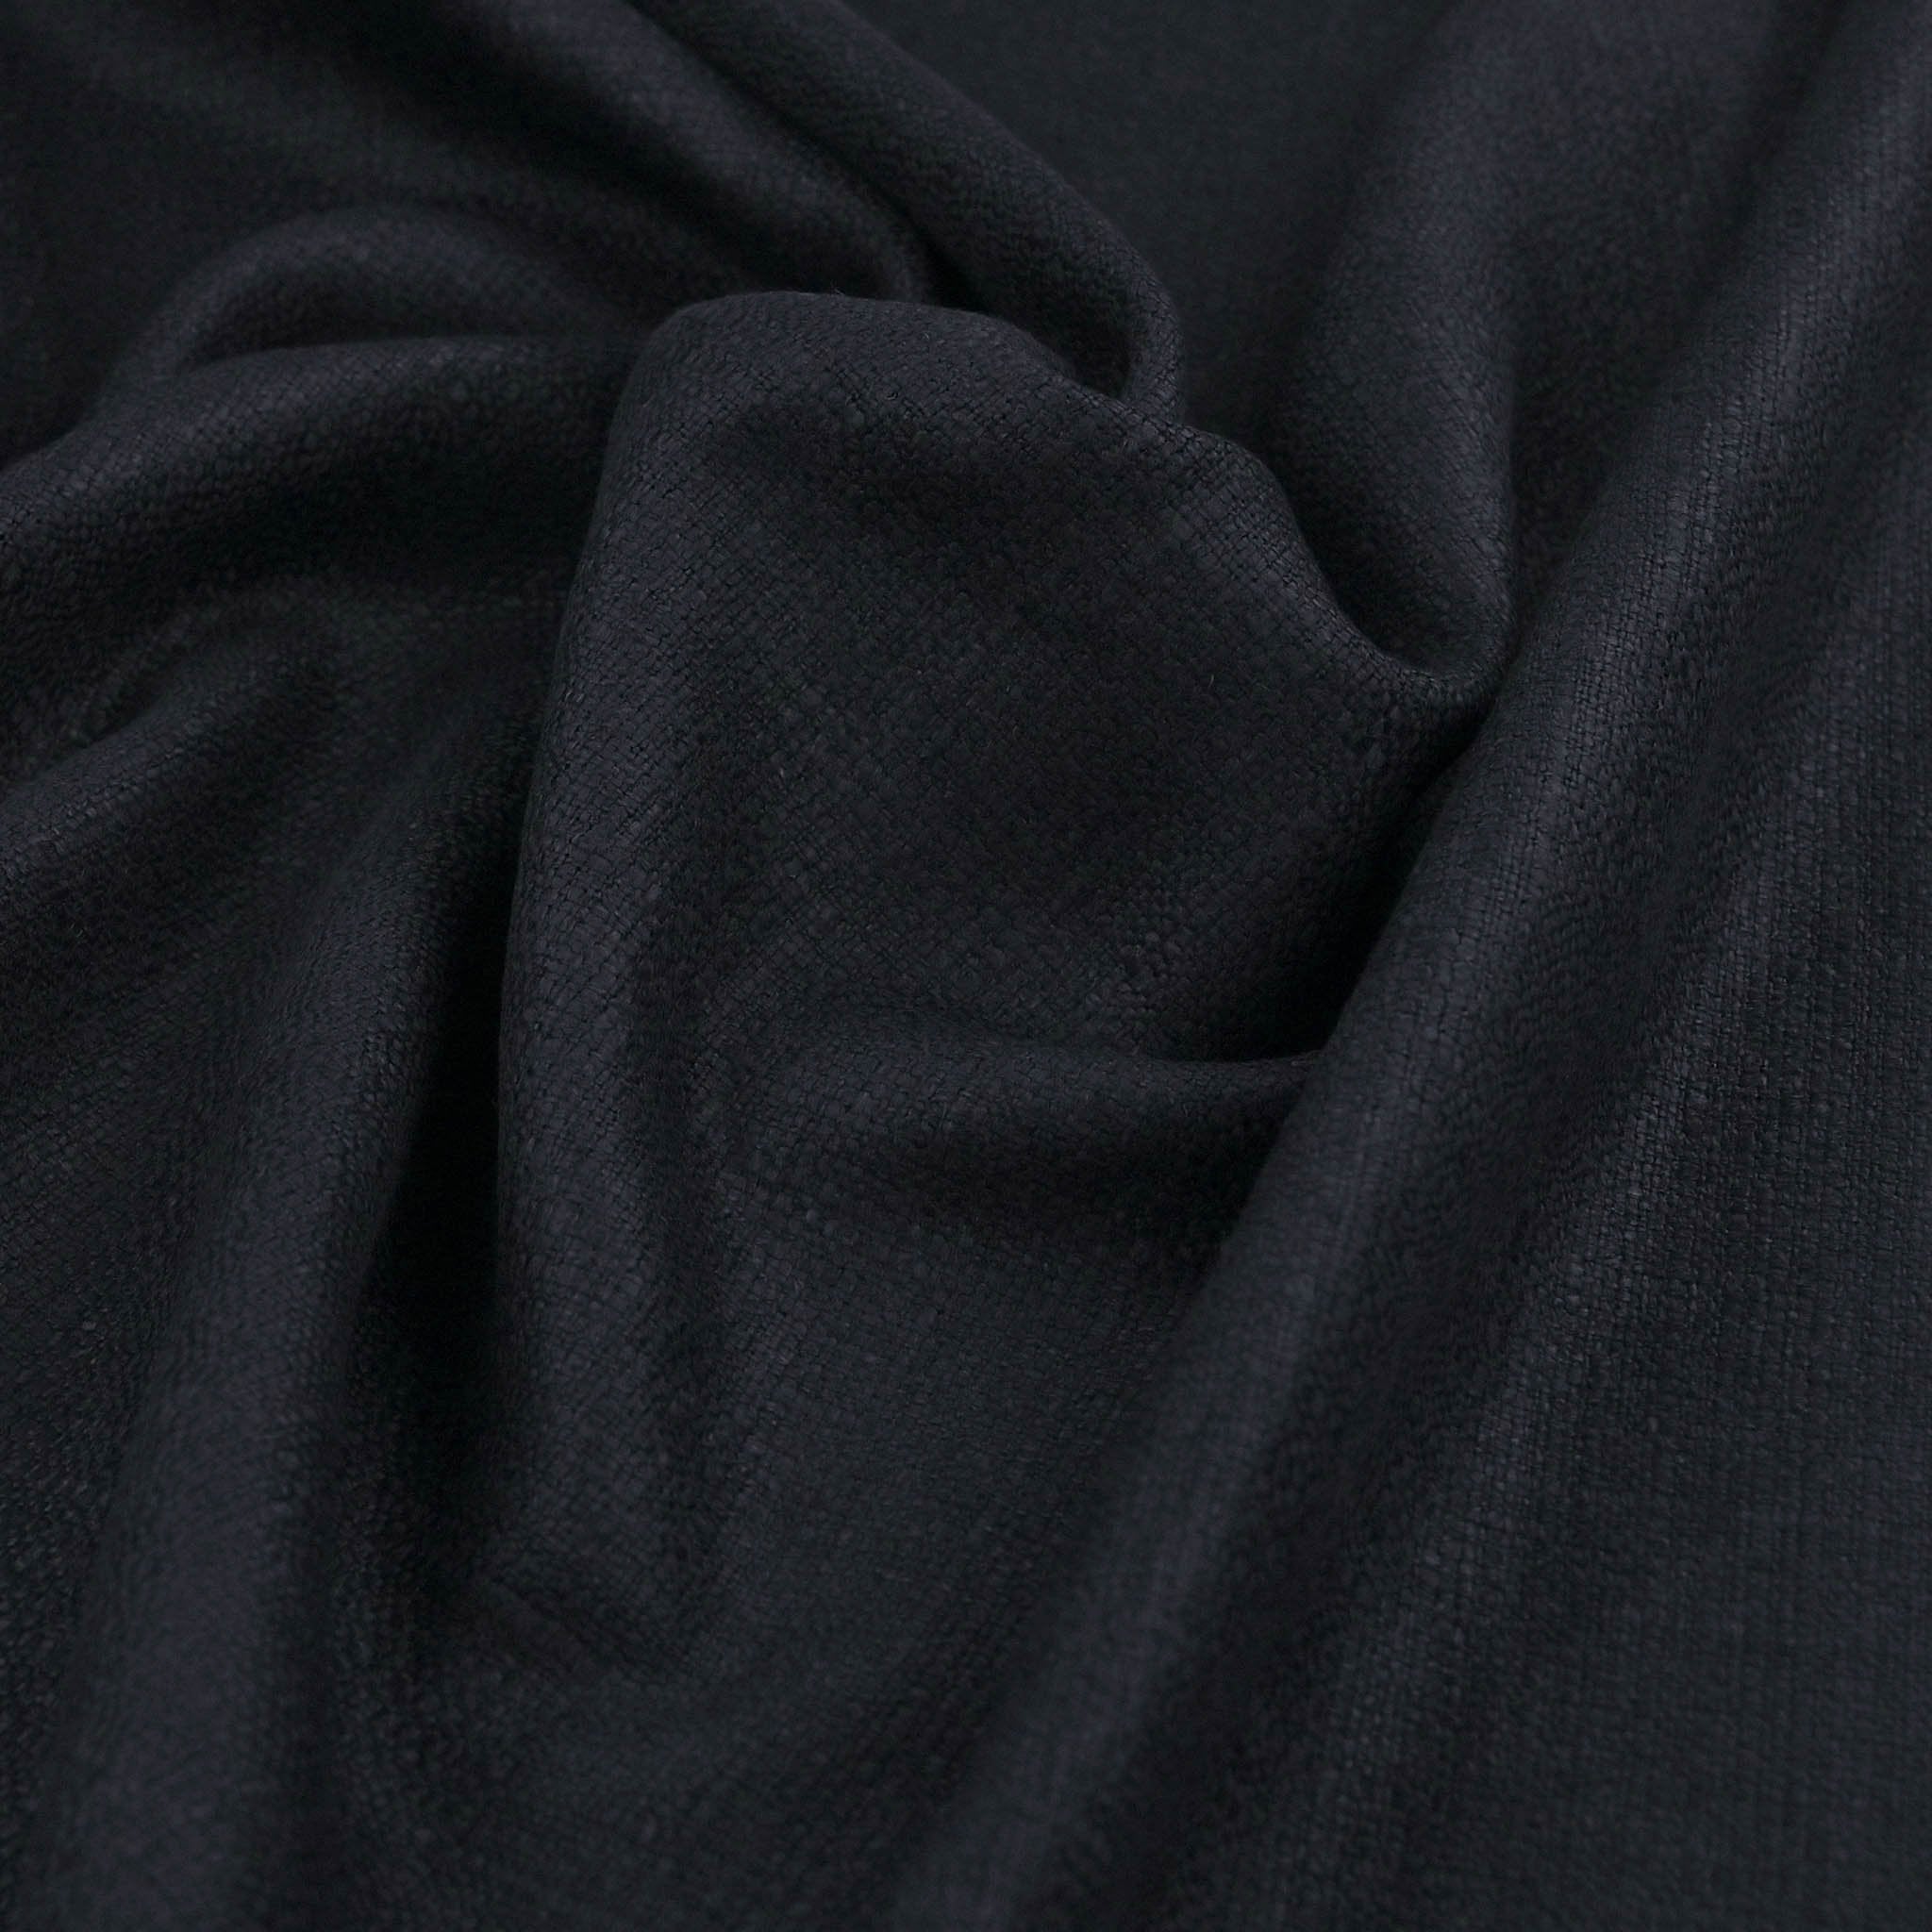 Navy Tweed Fabric  99672